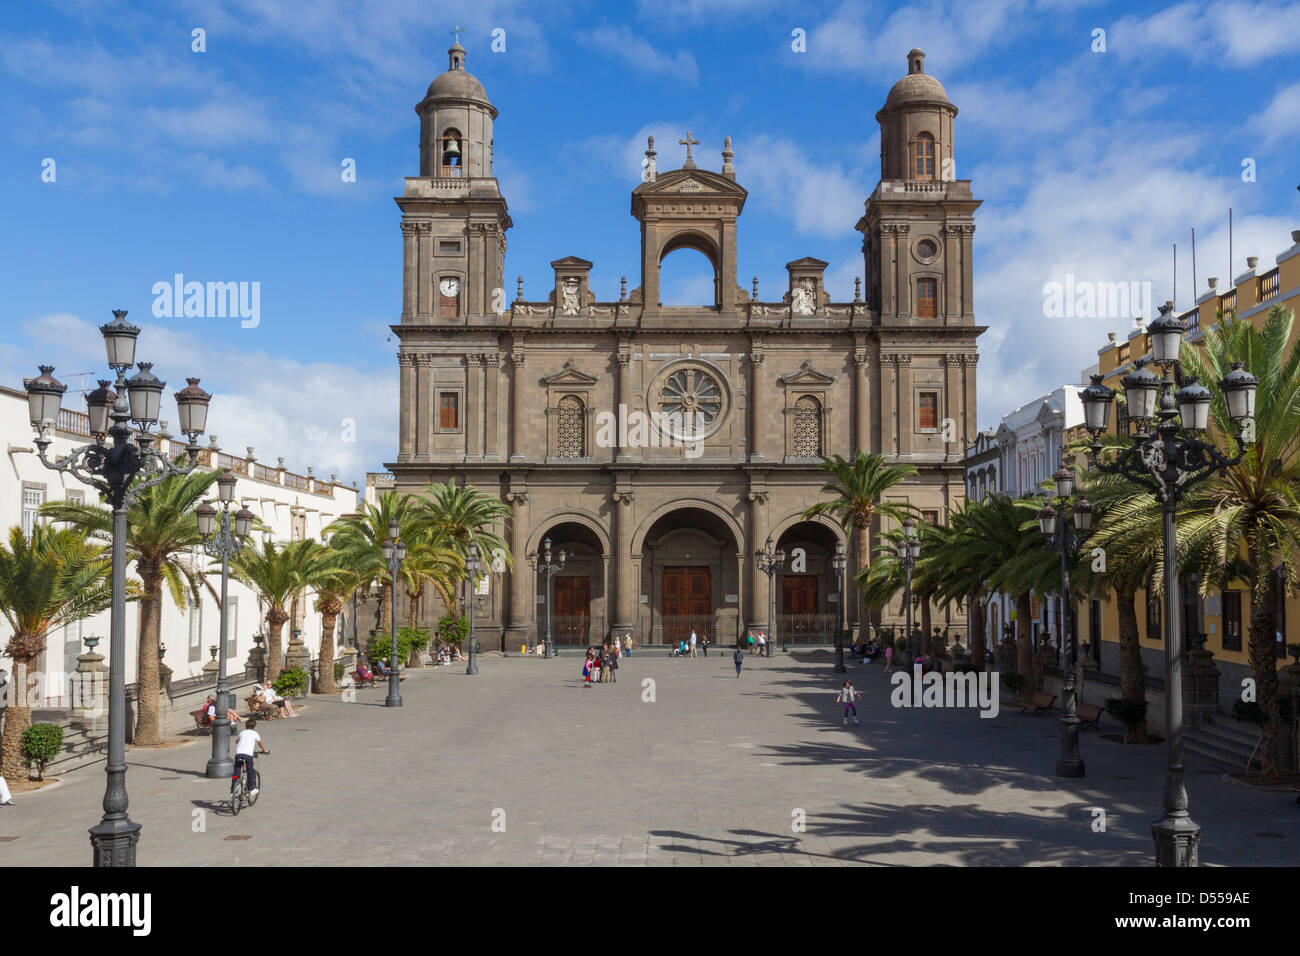 Espagne iles canaries, Grande Canarie, Las Palmas, la cathédrale et la place Santa Ana Banque D'Images